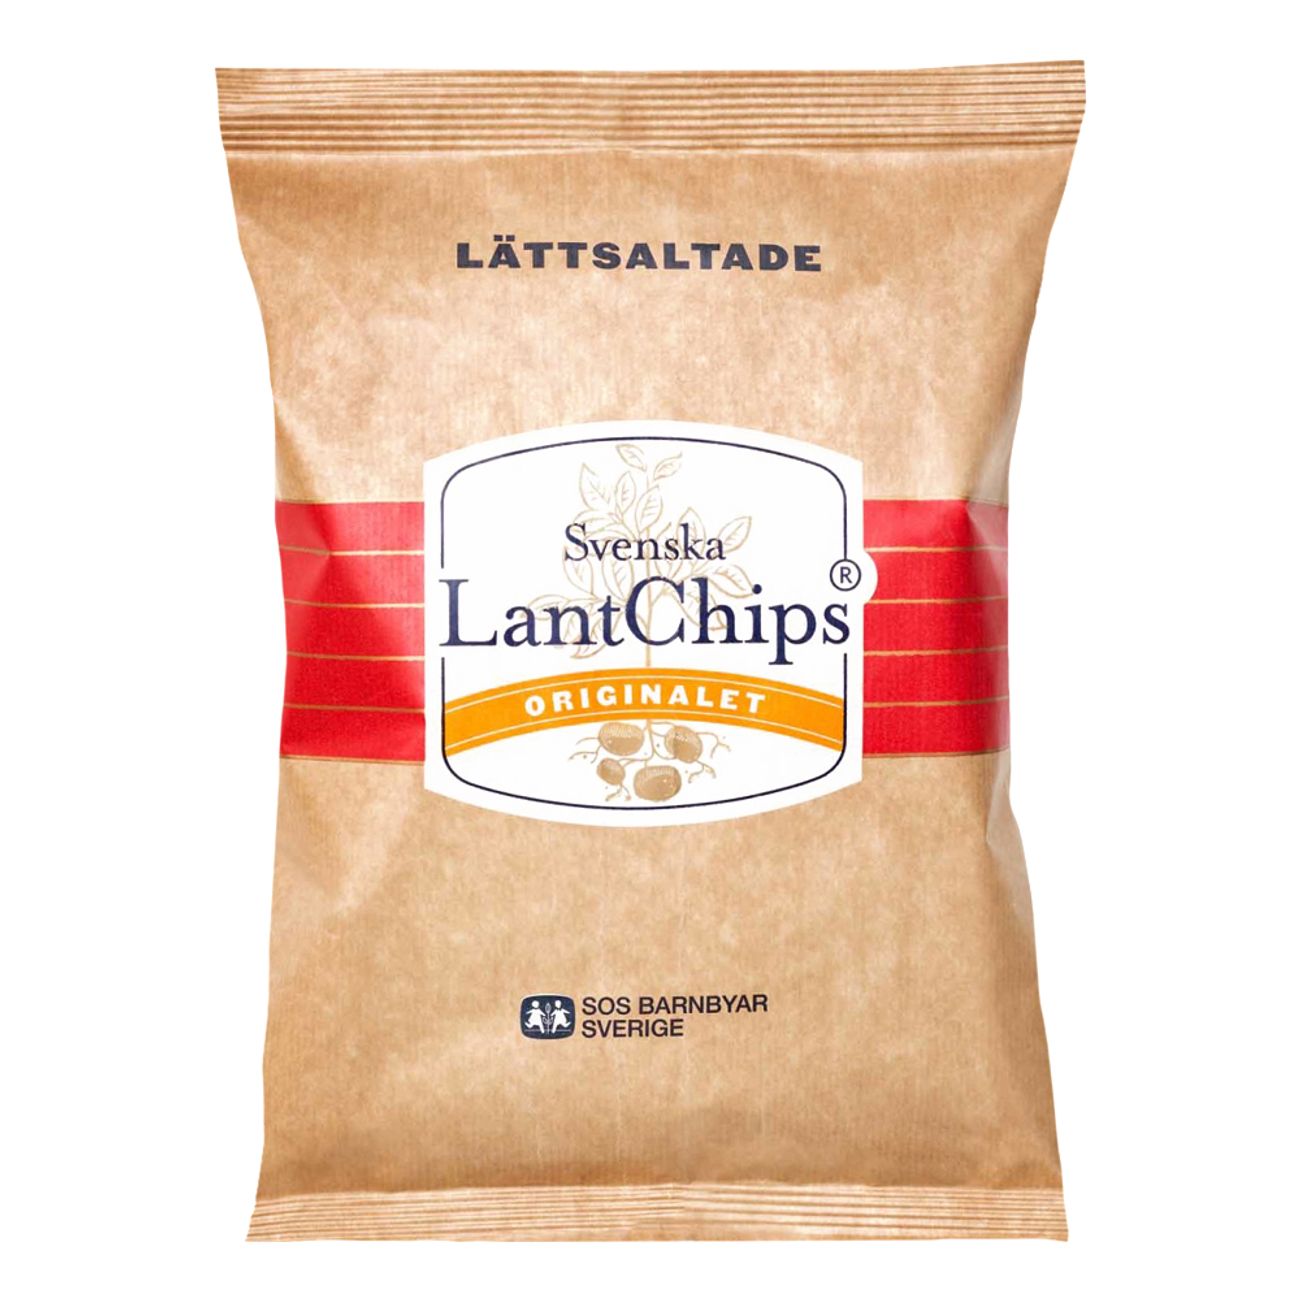 lantchips-lattsaltade-100922-1